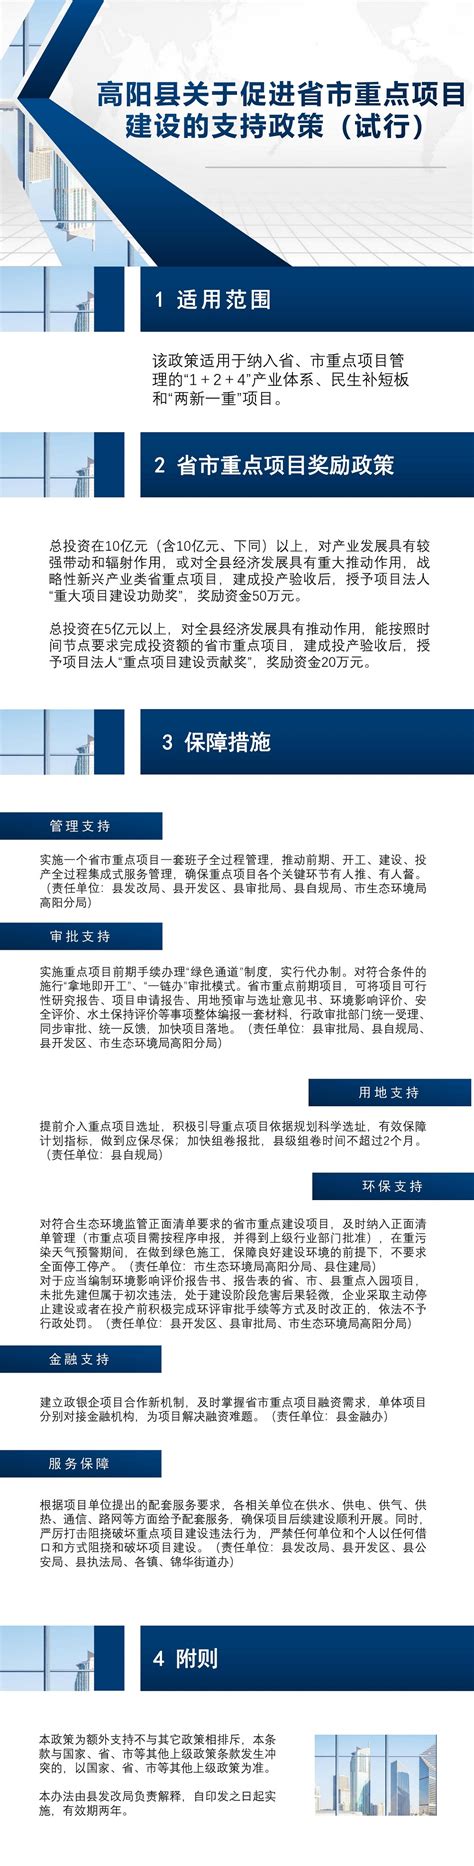 高阳县支持民营经济创新发展系列政策解读--高阳县人民政府网站